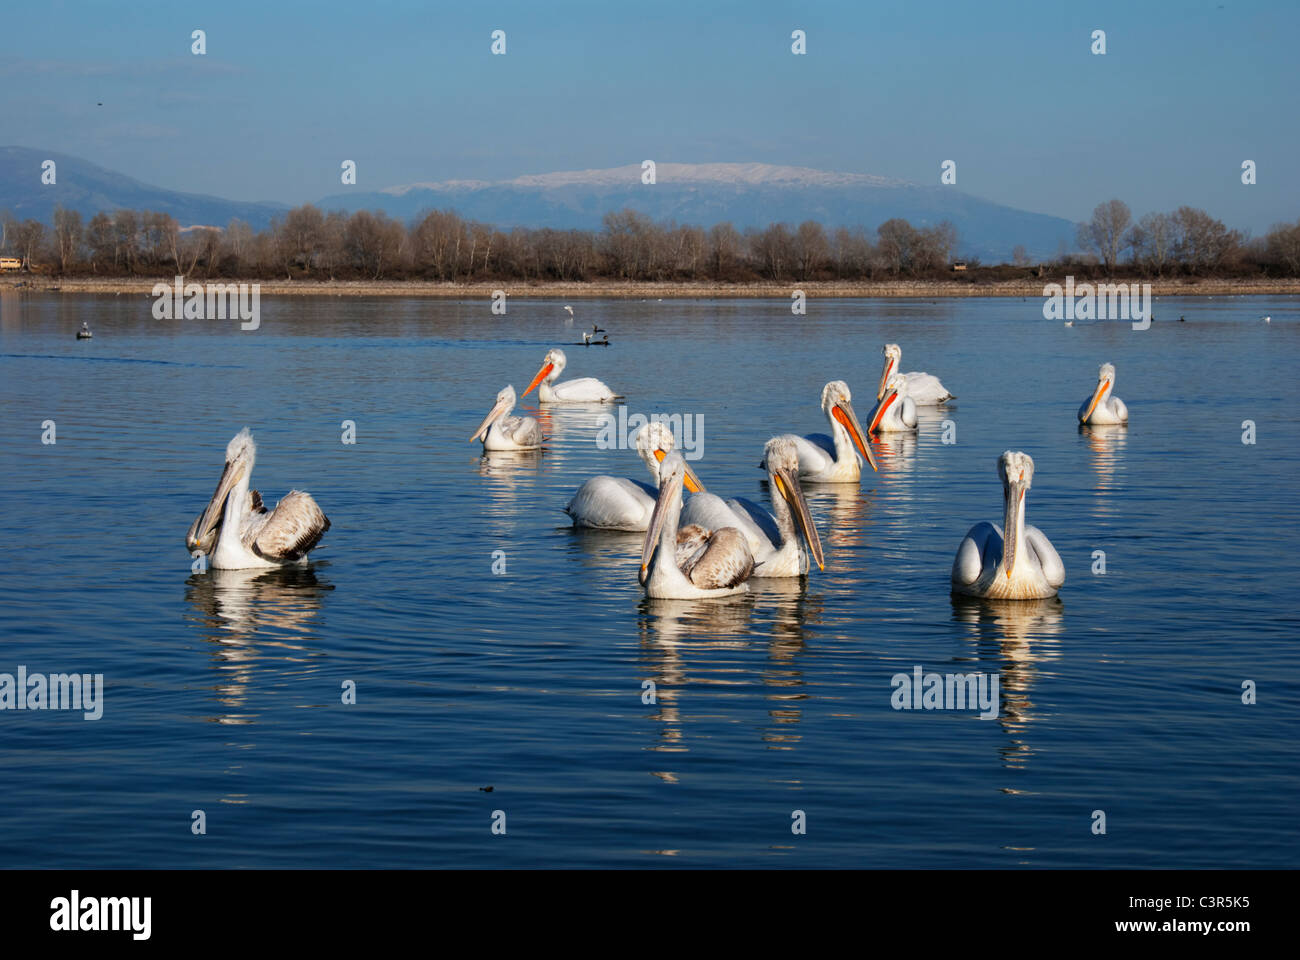 Groupe de pélicans dalmates (Pelecanus crispus), lake Kerkini, Grèce Banque D'Images